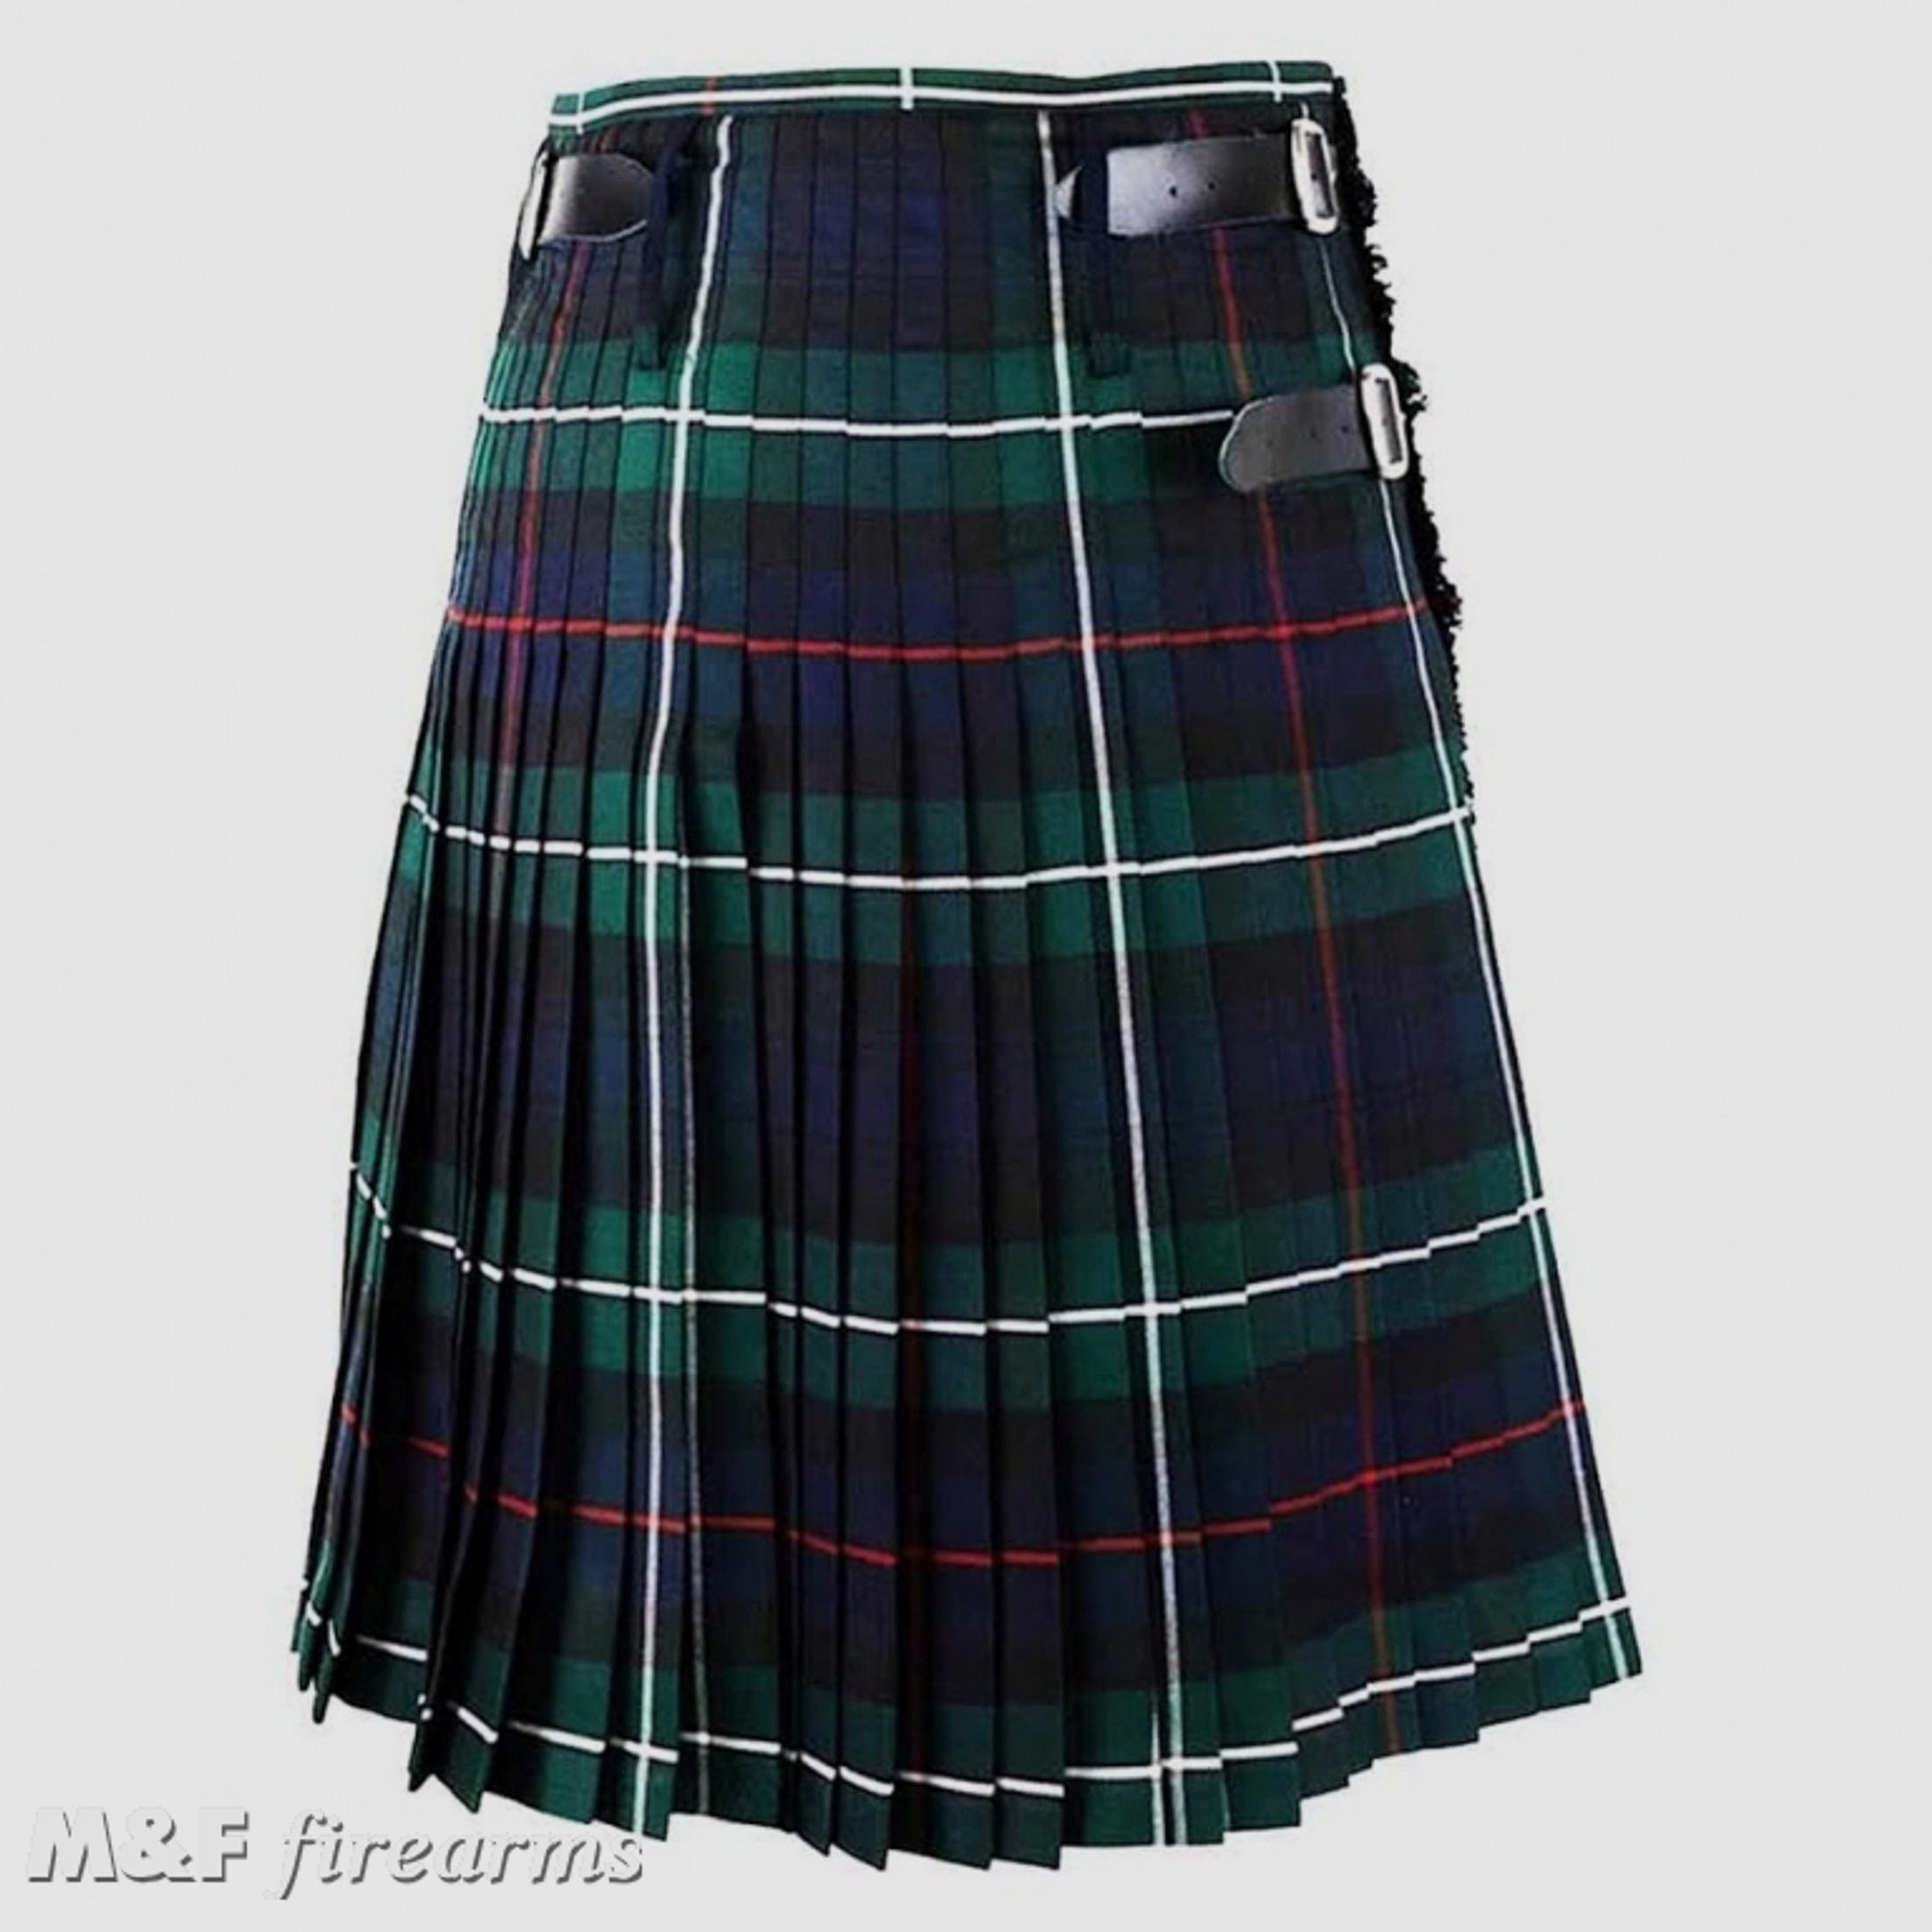 Schottischer Kilt in den Farben des Scottish National Tartan Mackenzie Modern